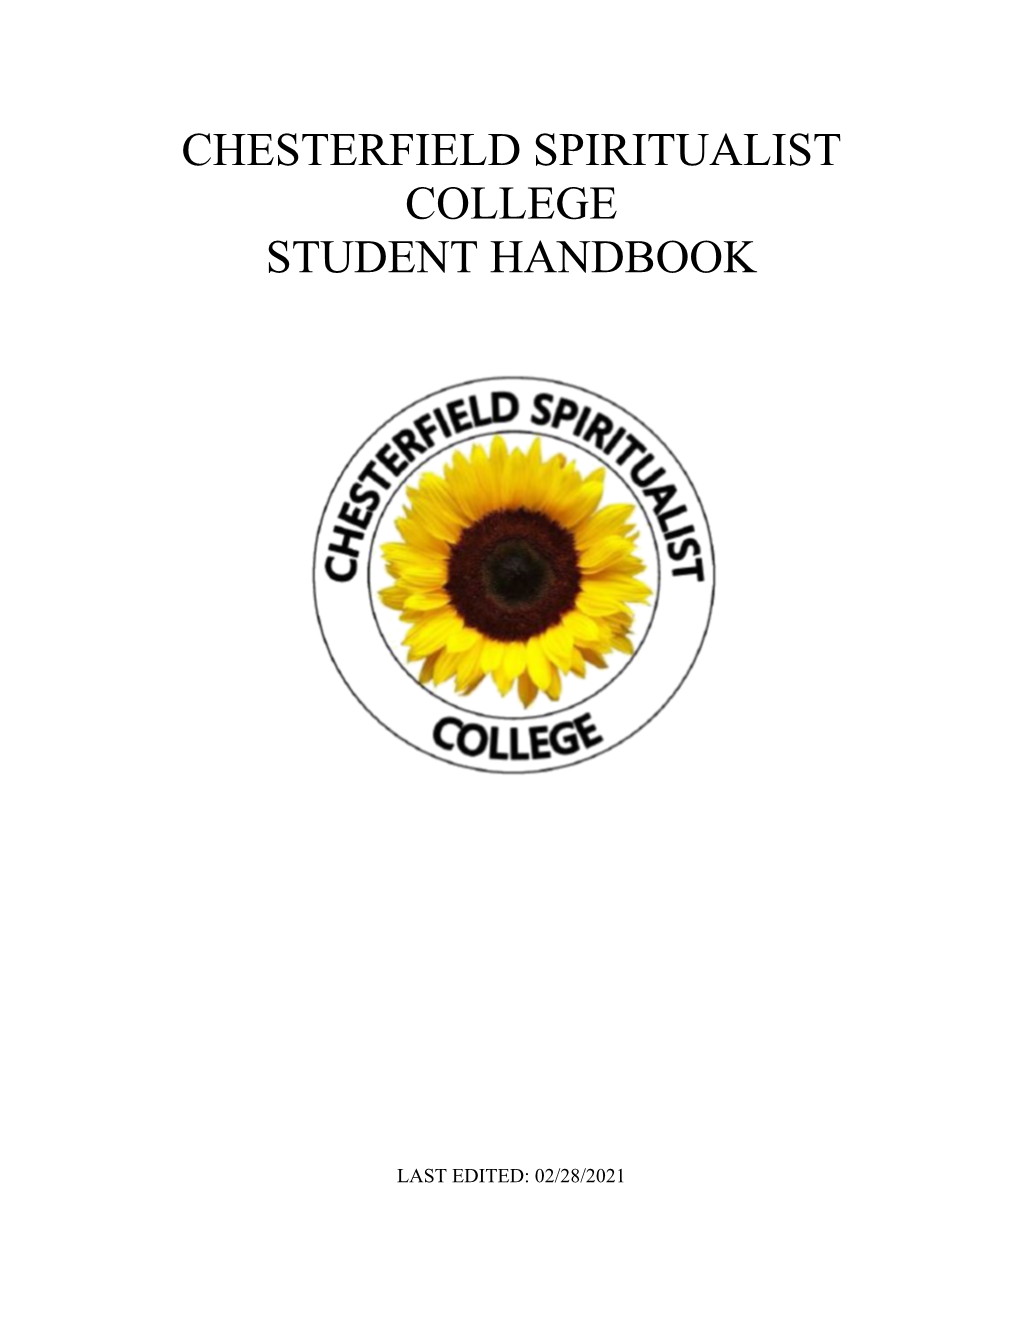 Chesterfield Spiritualist College Student Handbook